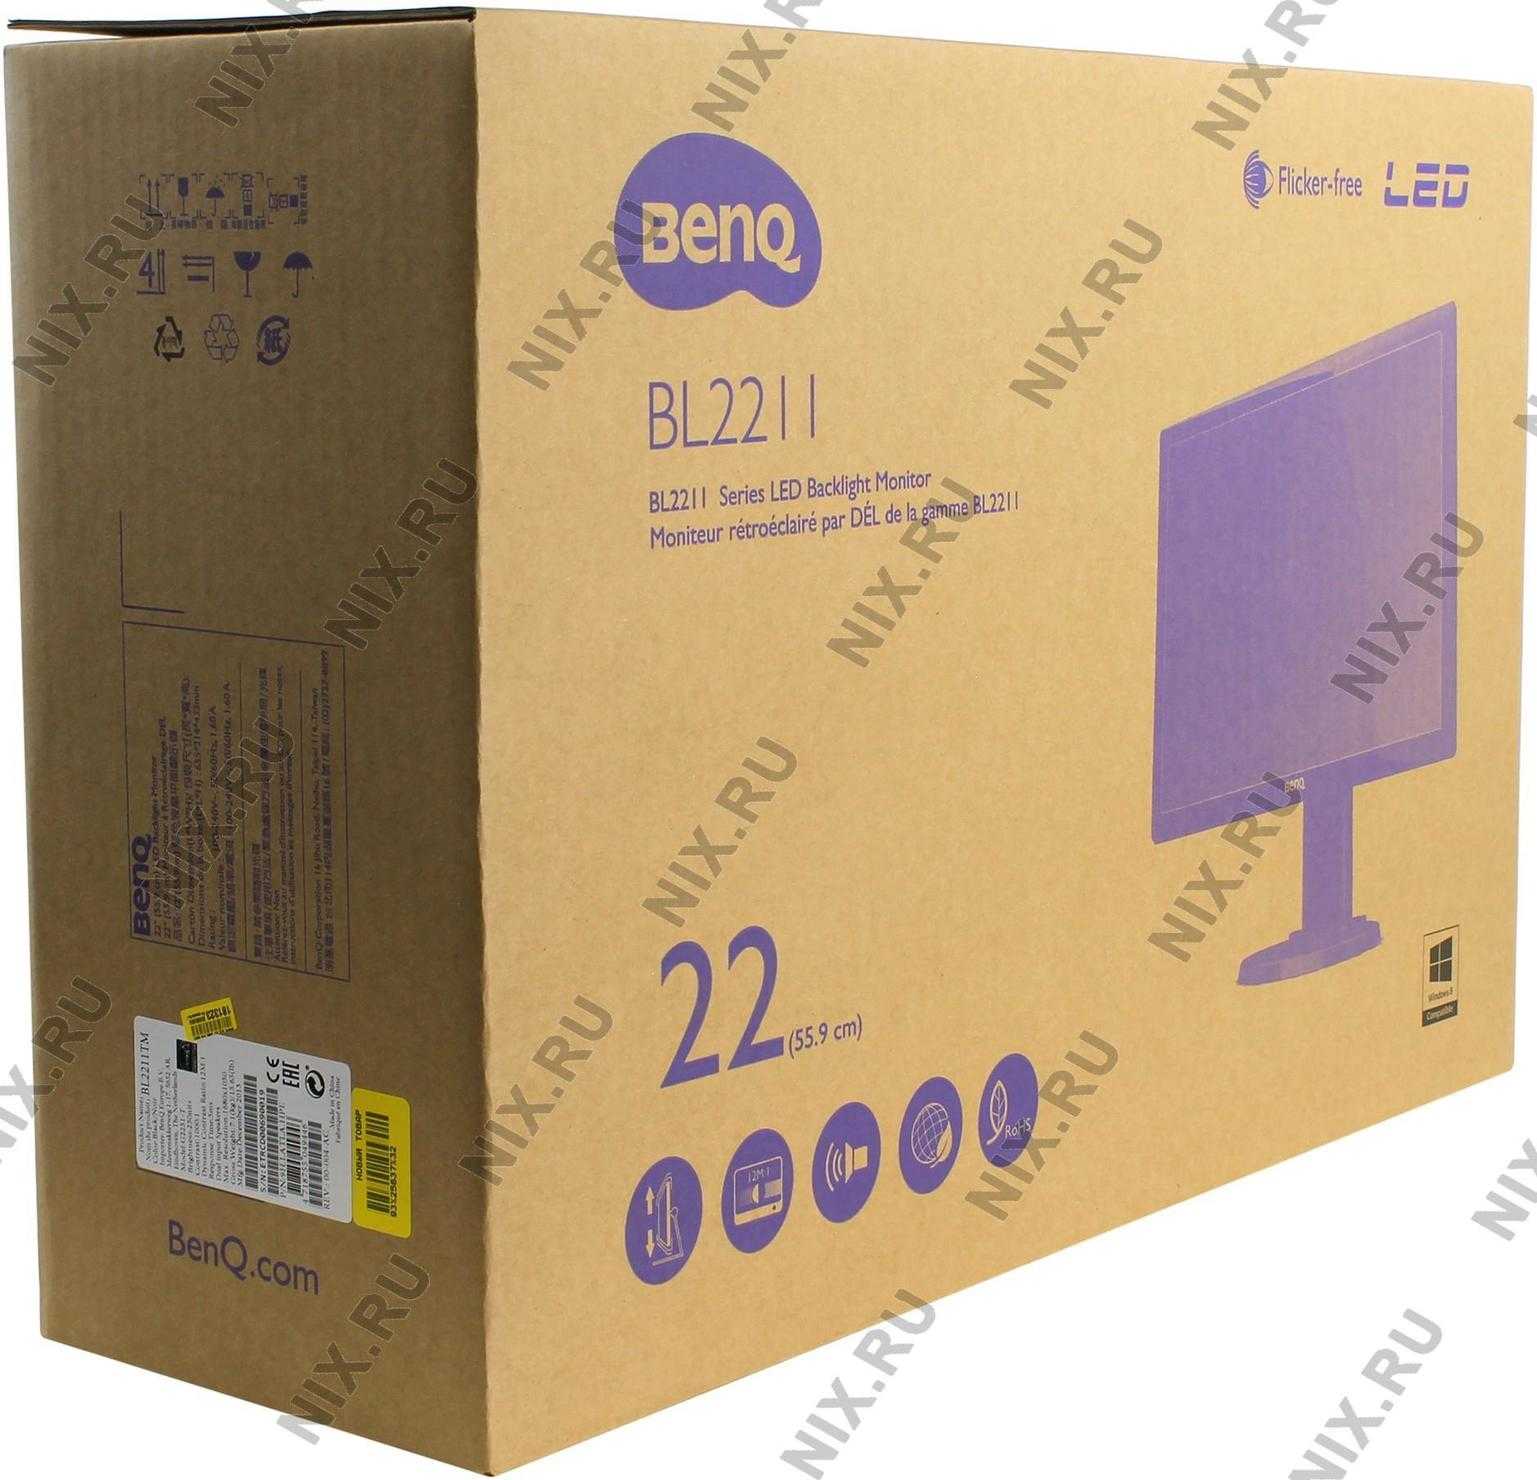 Жк монитор 22" benq bl2211m — купить, цена и характеристики, отзывы